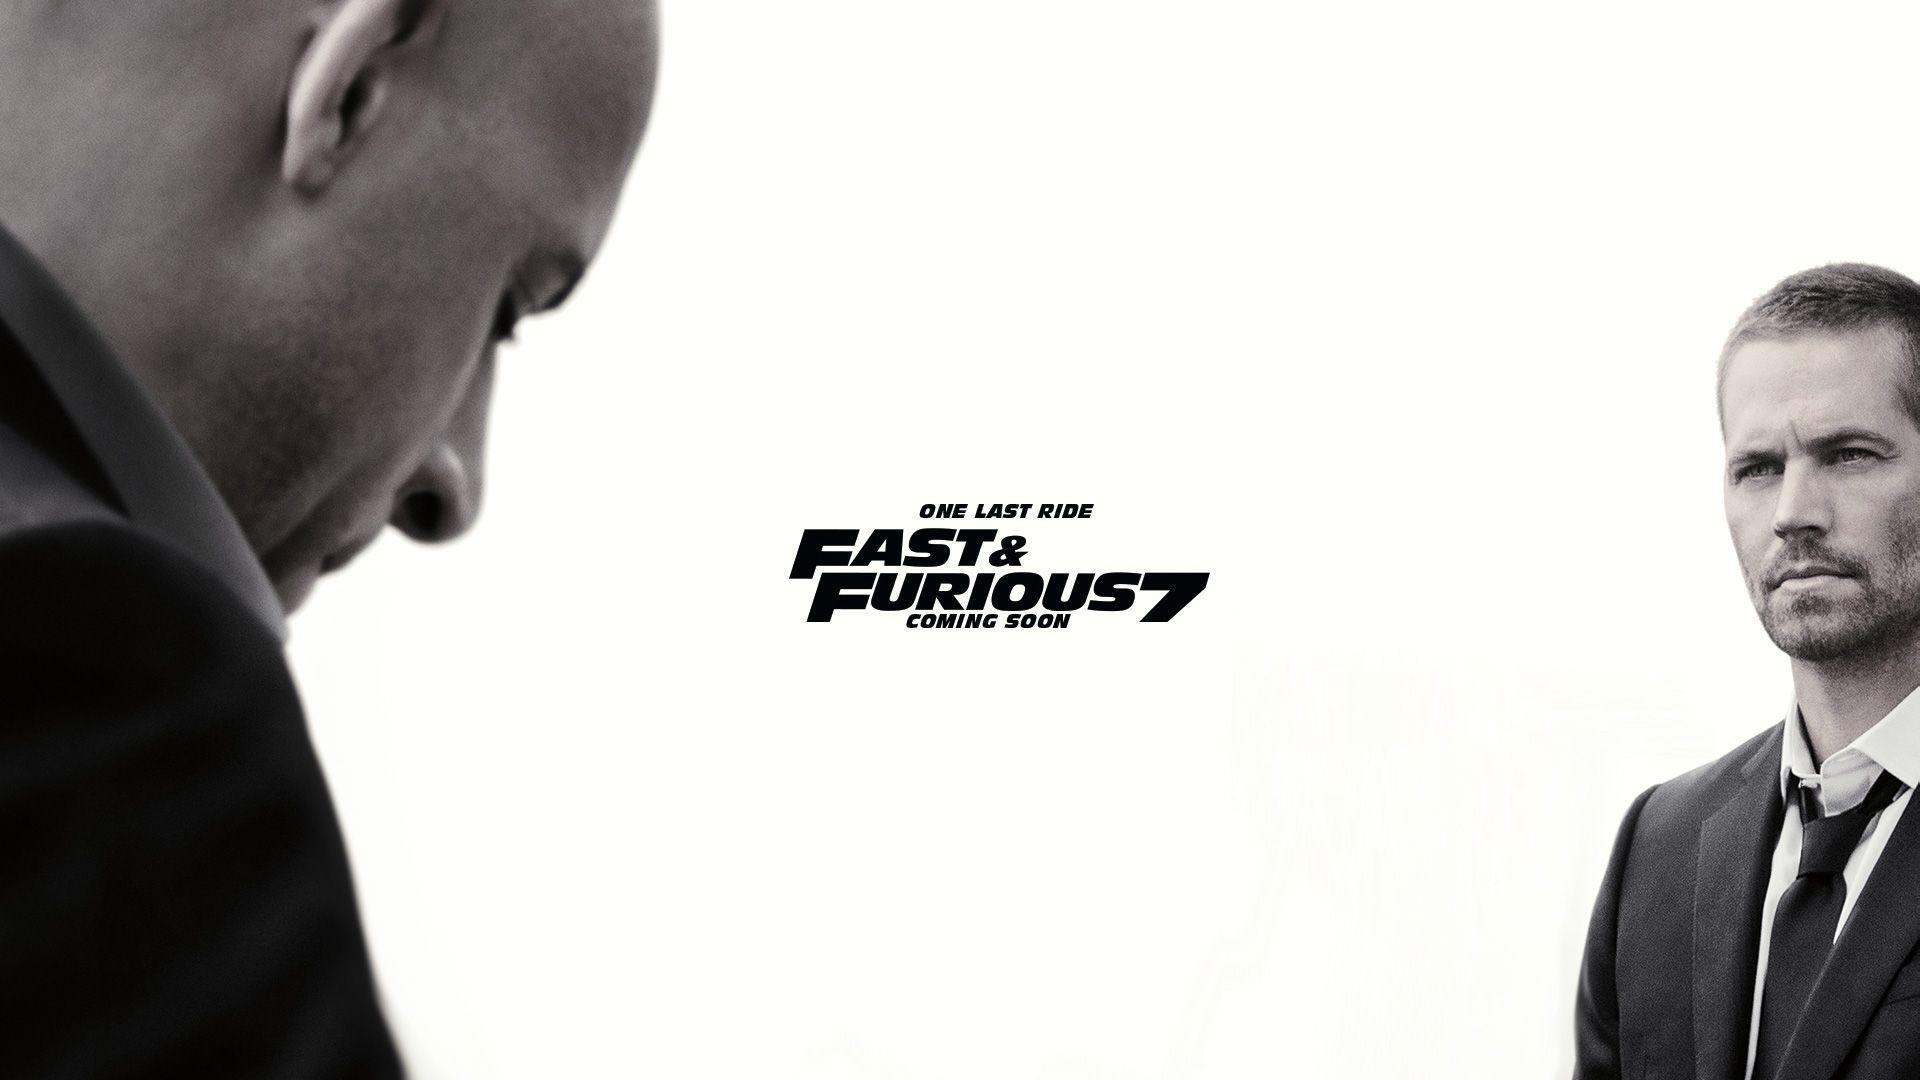 Fast & Furious 7 Last Ride 1920x1080 wallpaper. F&F